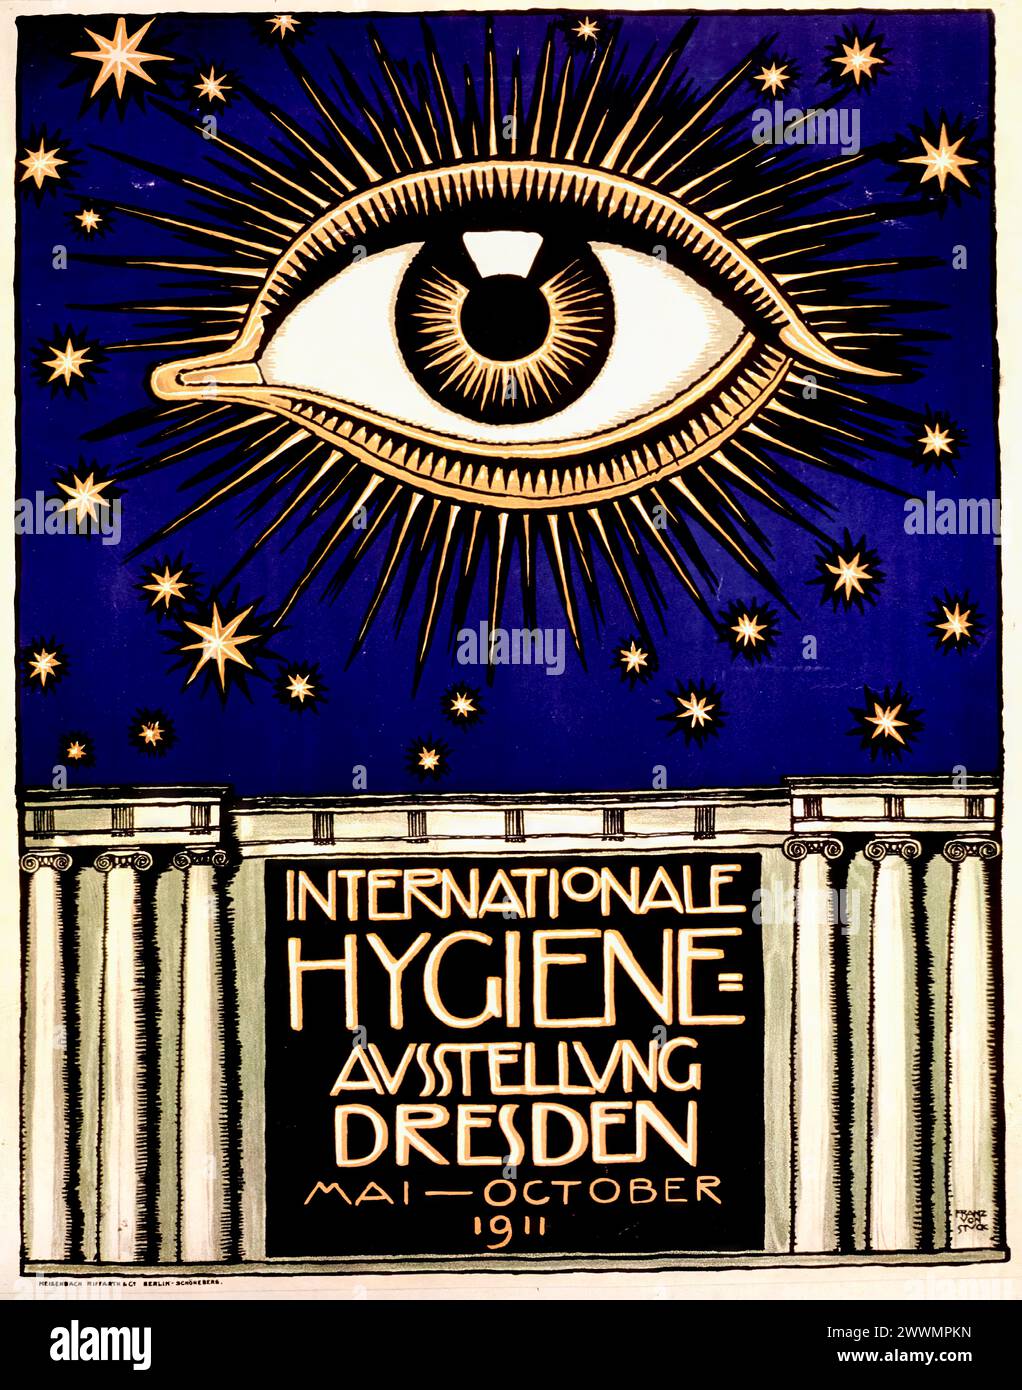 Salon international de l'hygiène, 1911 conception d'affiches promotionnelles par Franz von Stuck, 1911 Banque D'Images